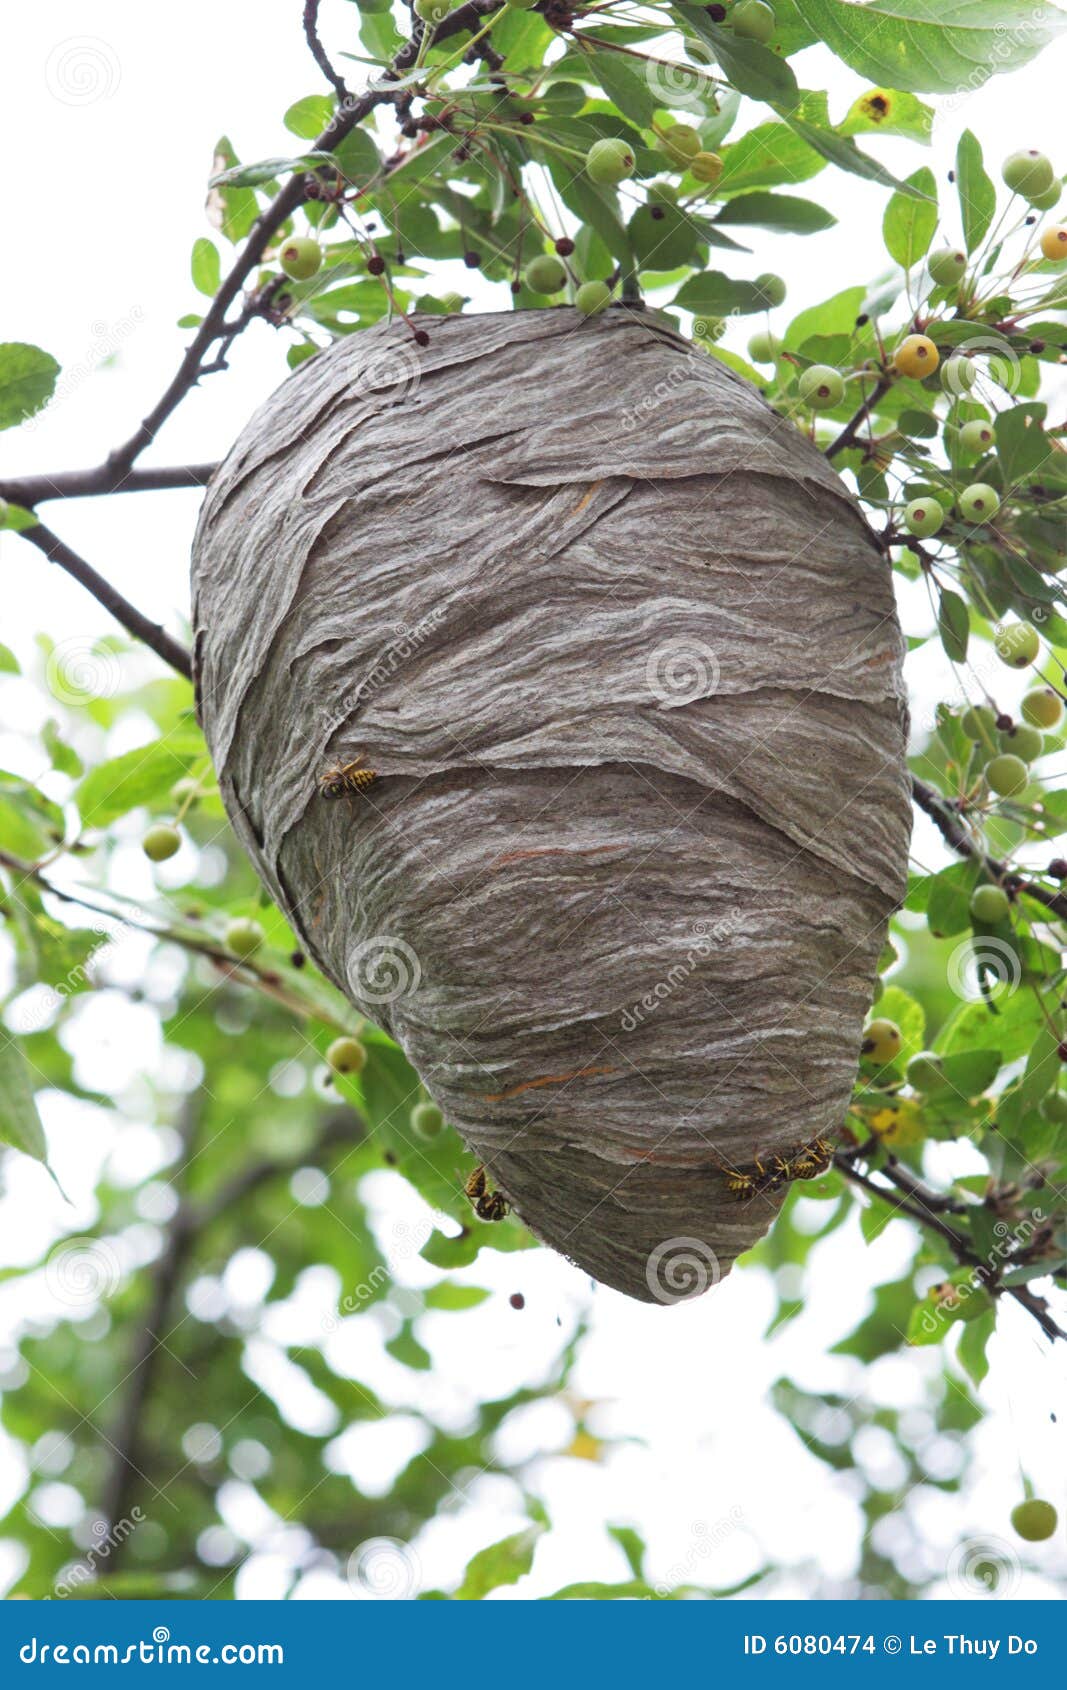 beehive-6080474.jpg